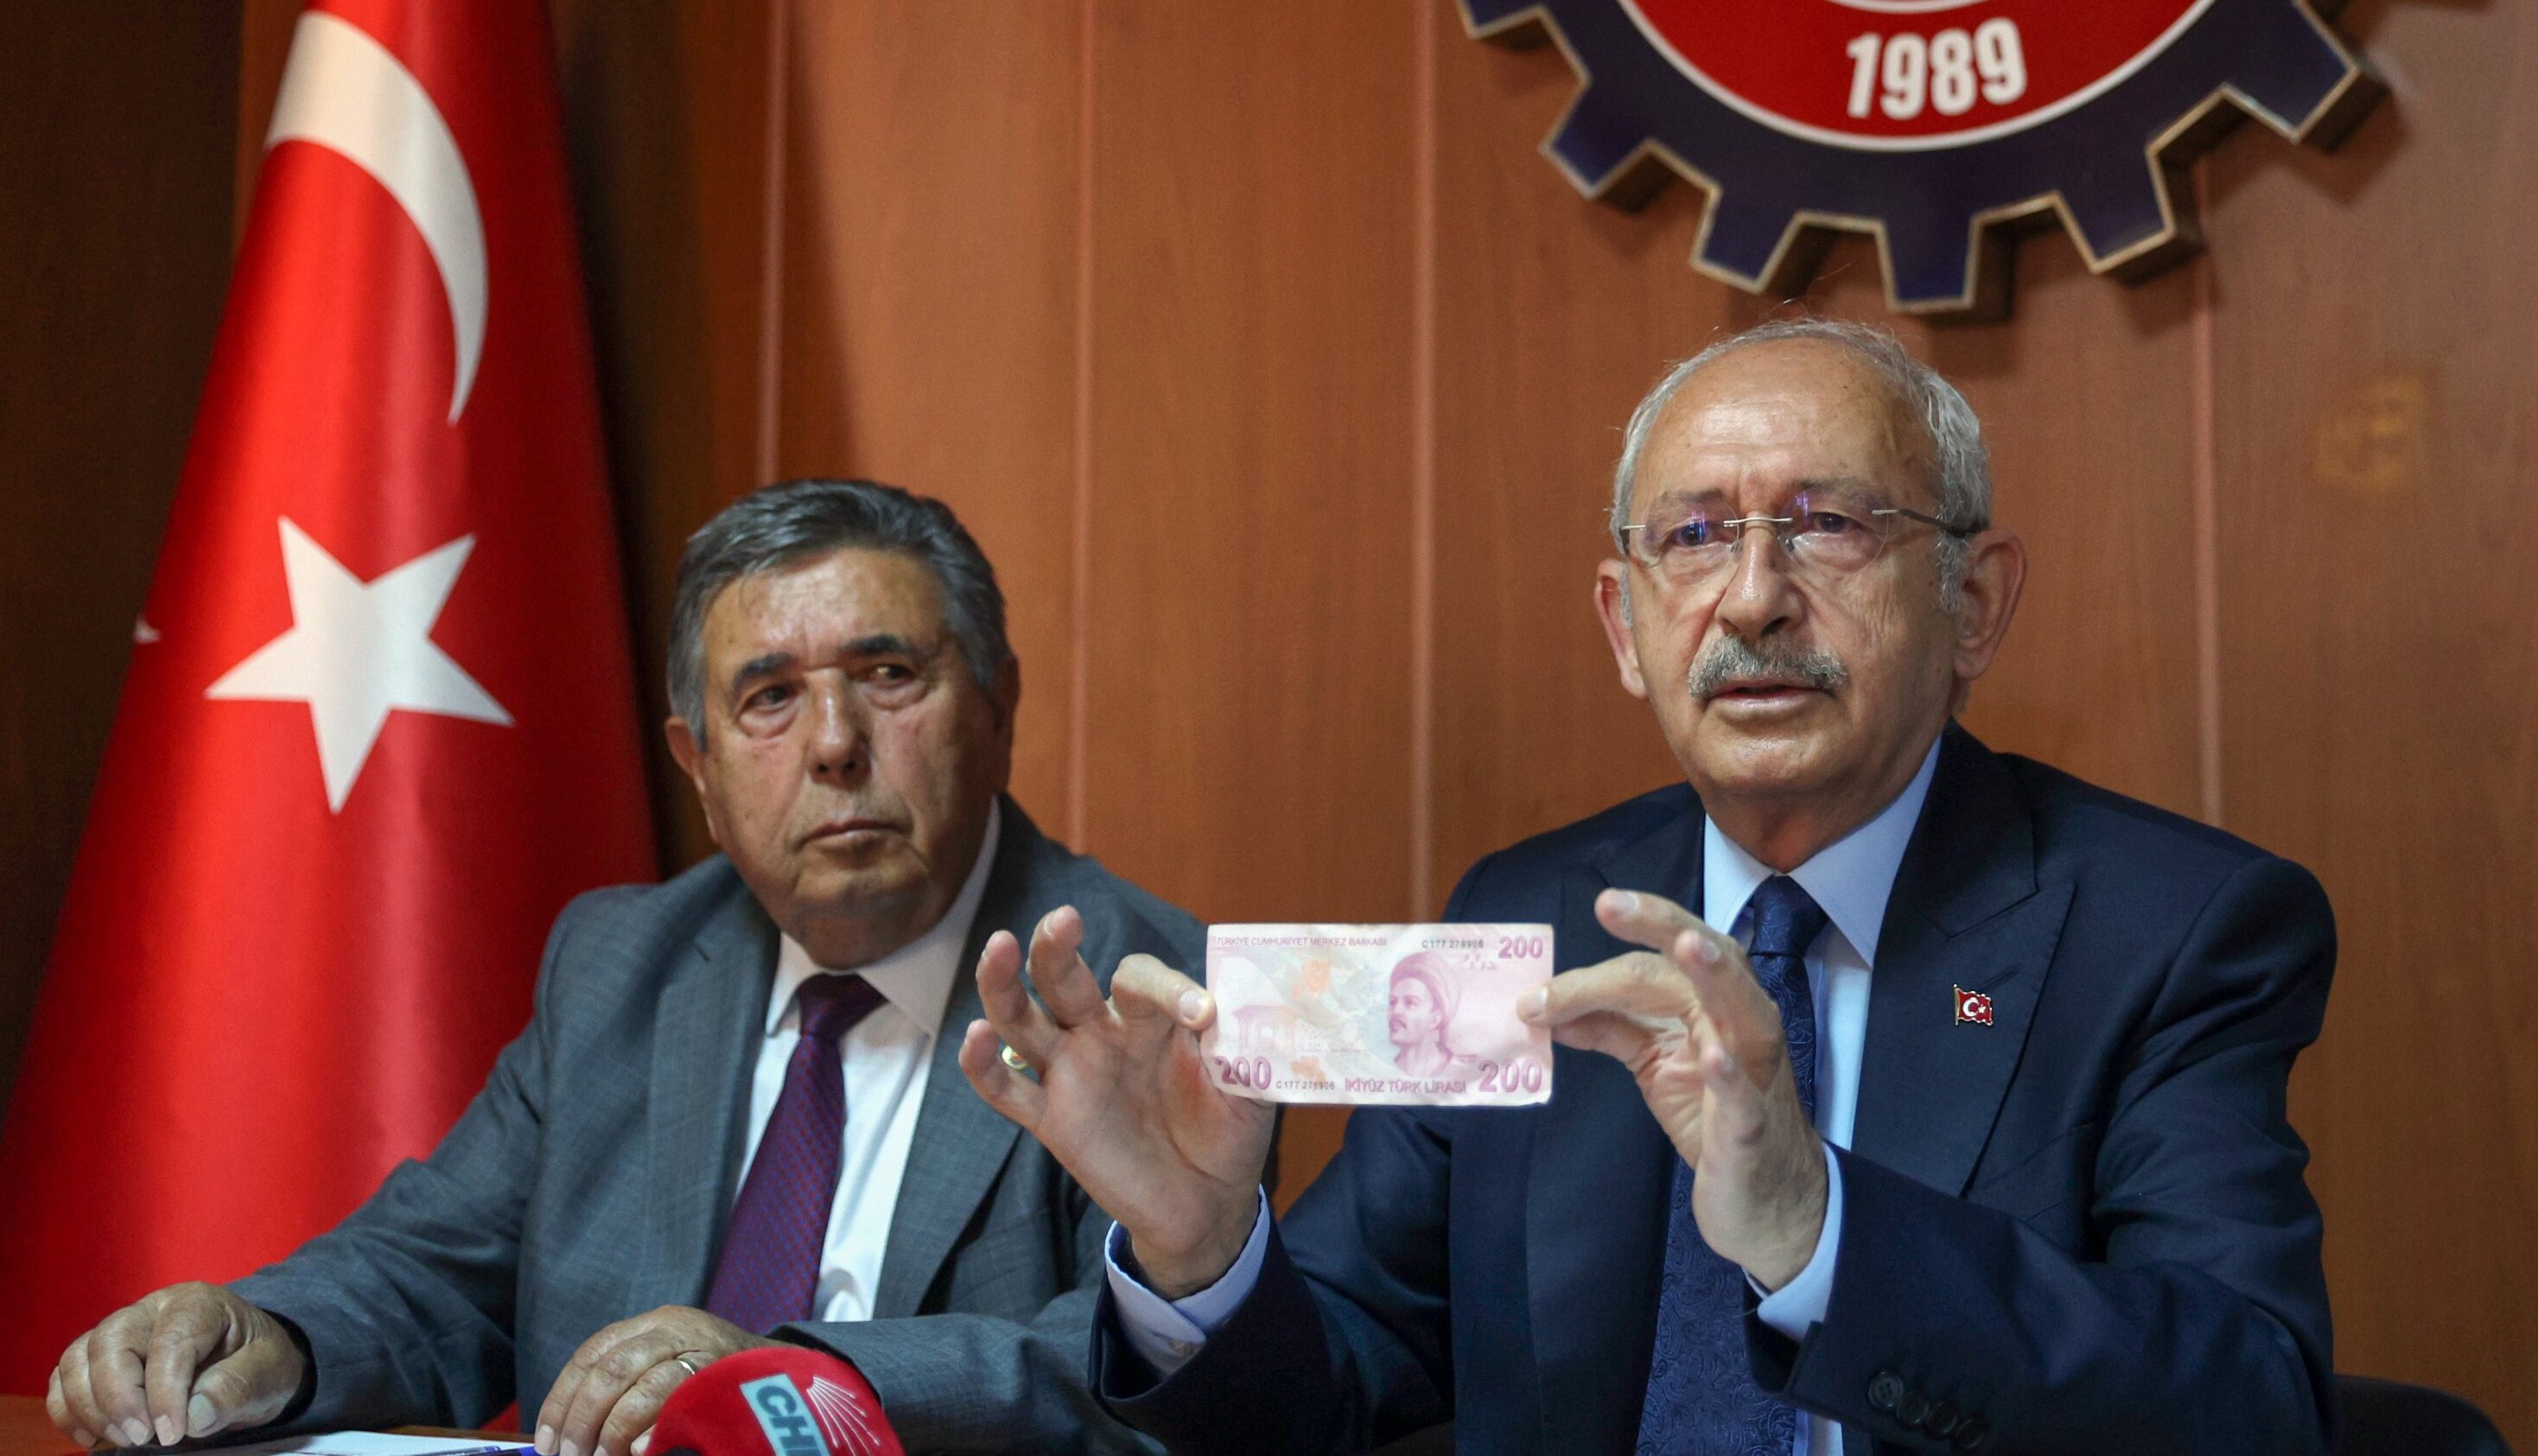 Kılıçdaroğlu cebinden çıkarıp sordu: 200 TL ile ne alabiliyorsunuz?